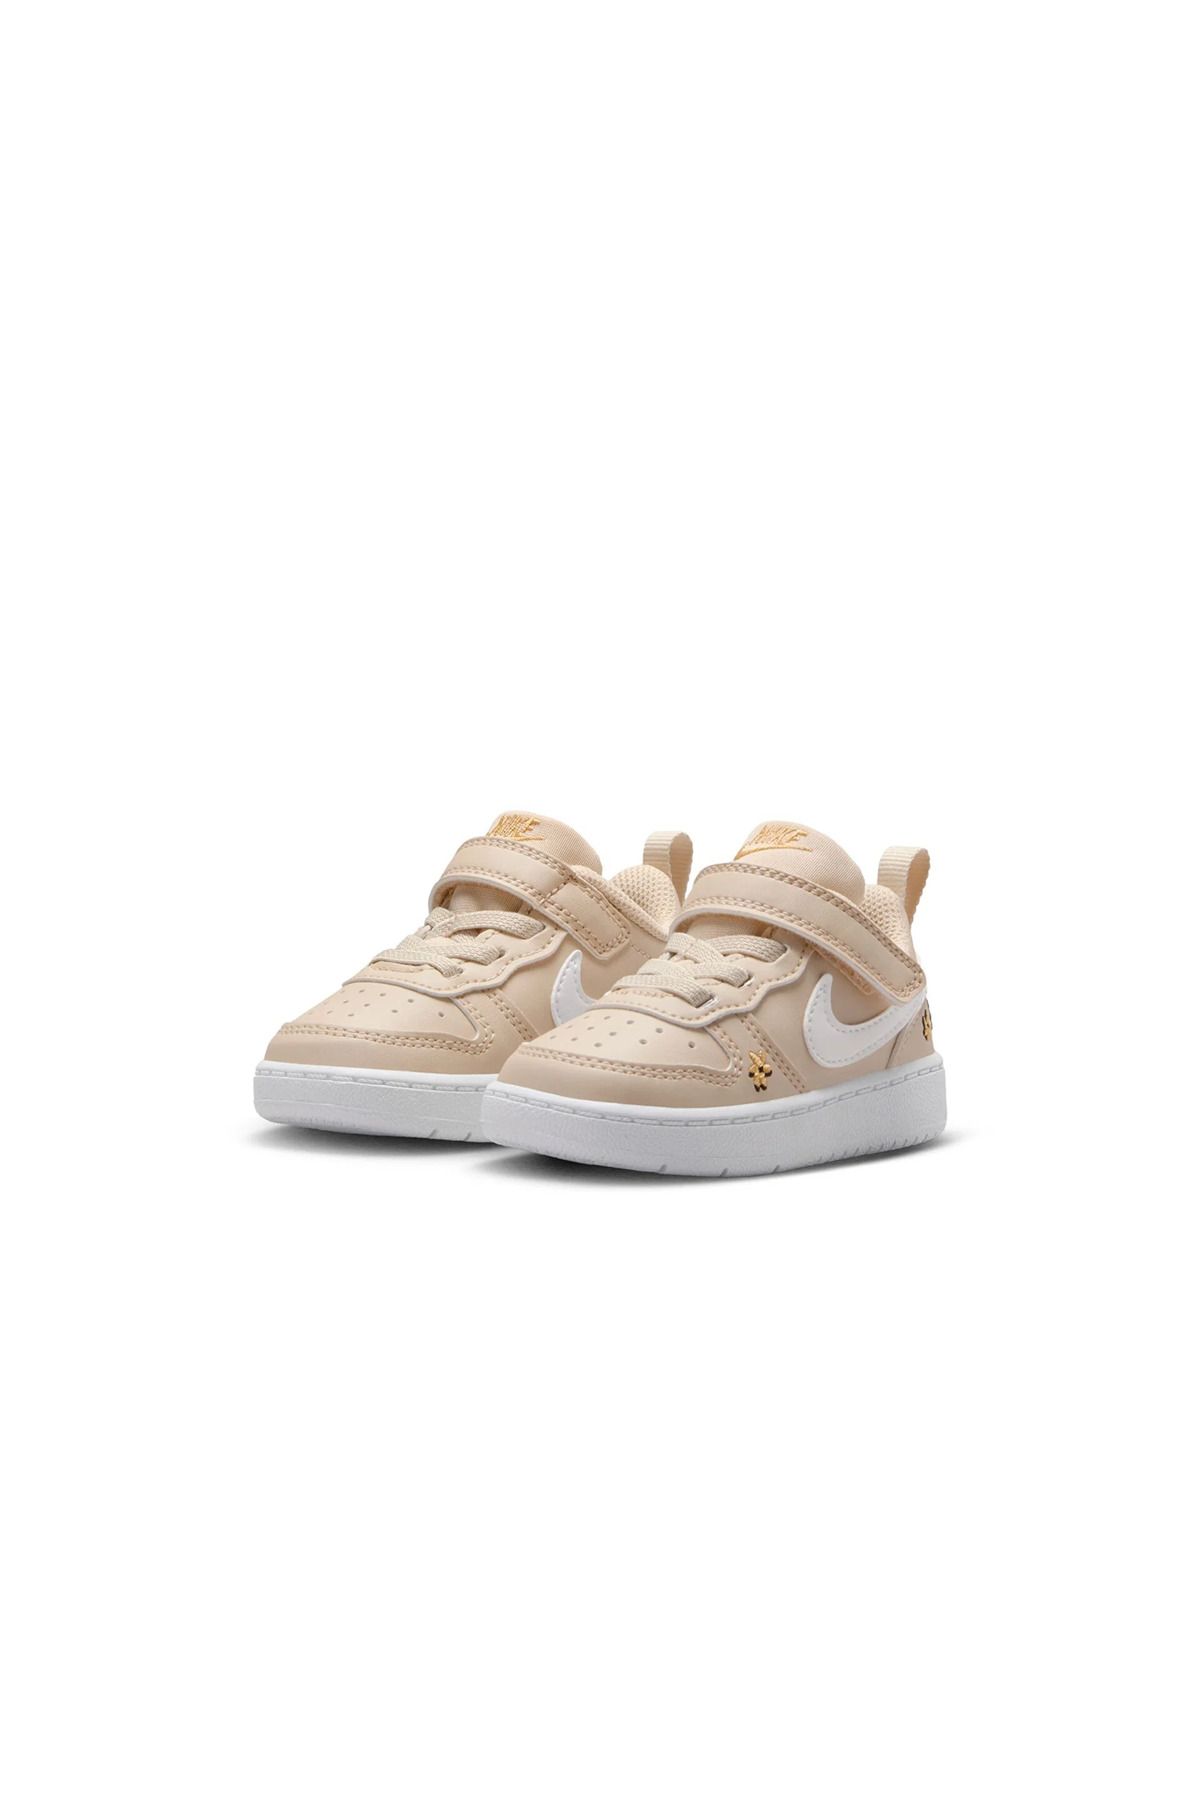 Nike Court Borough Recraft Se Tdv Çocuk Sneaker Ayakkabı